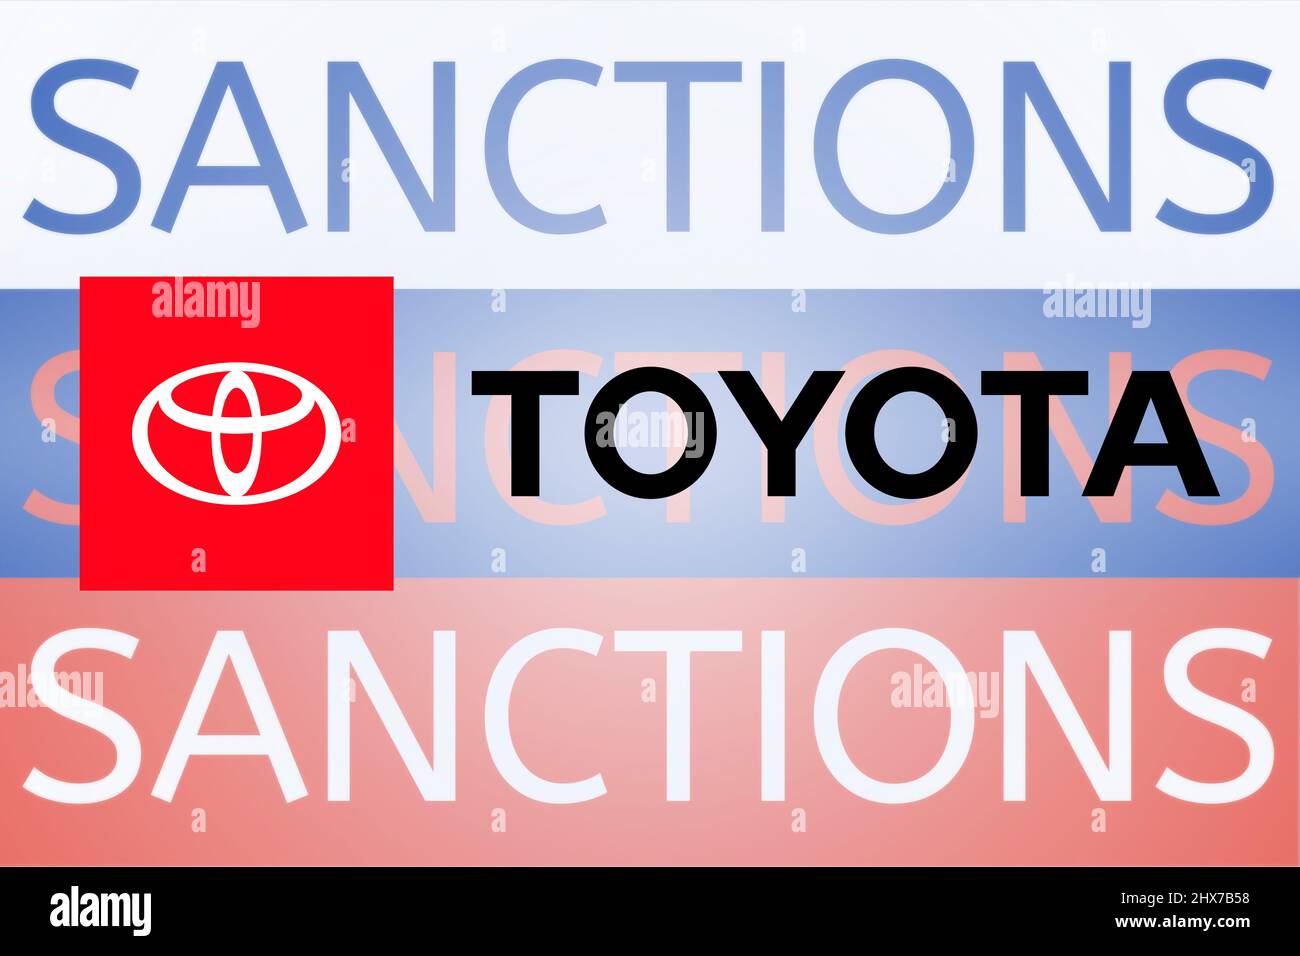 Toyota Sanktionen gegen Russland wegen seiner Invasion in der Ukraine. März 2022, San Francisco, USA Stockfoto